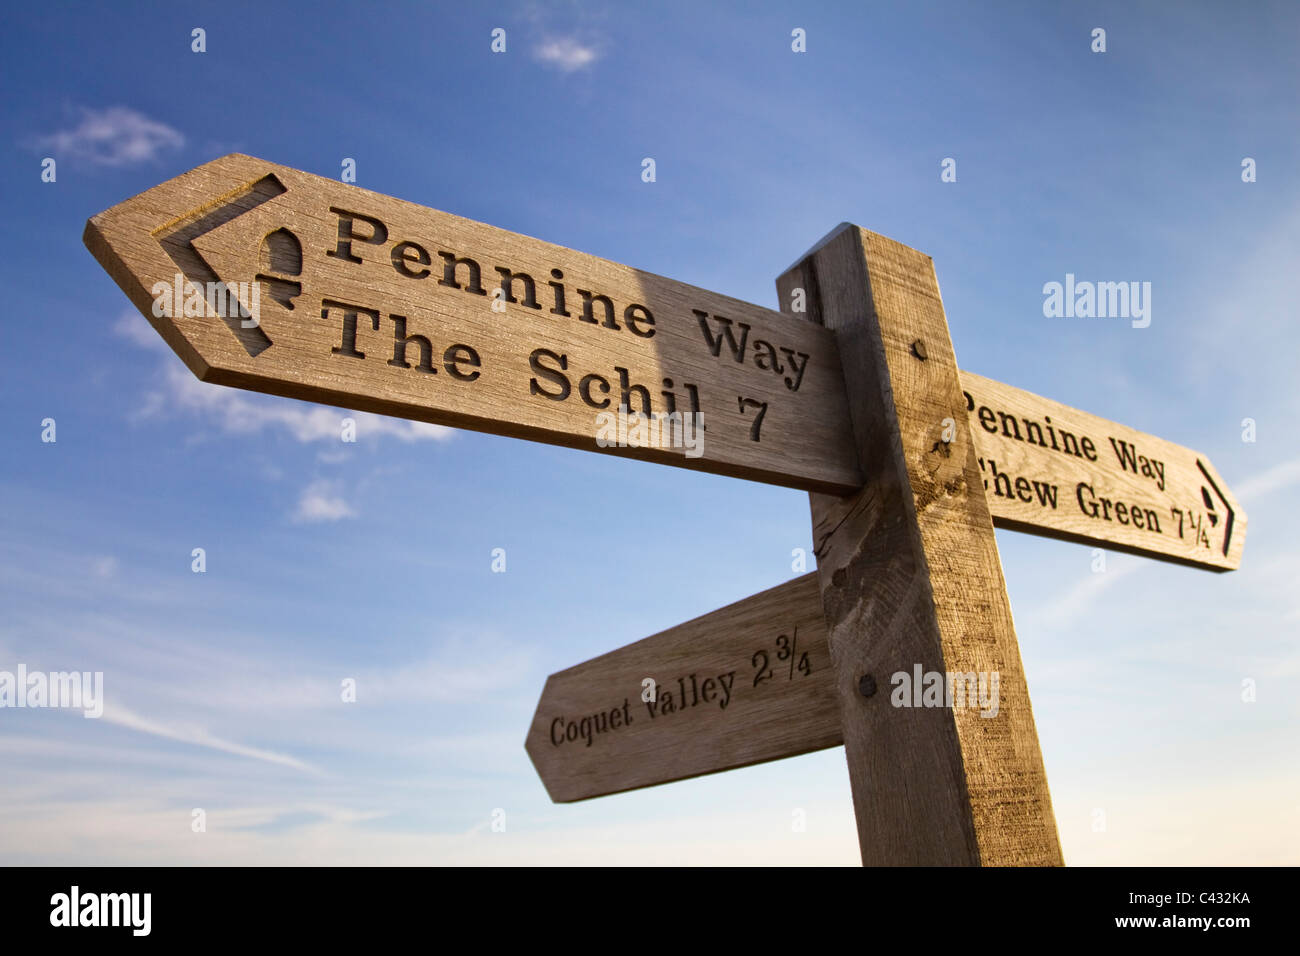 Pennine Way sign au sommet de Windy Gyle dirigée vers la Schil et Chew Green, Northumberland, England Banque D'Images